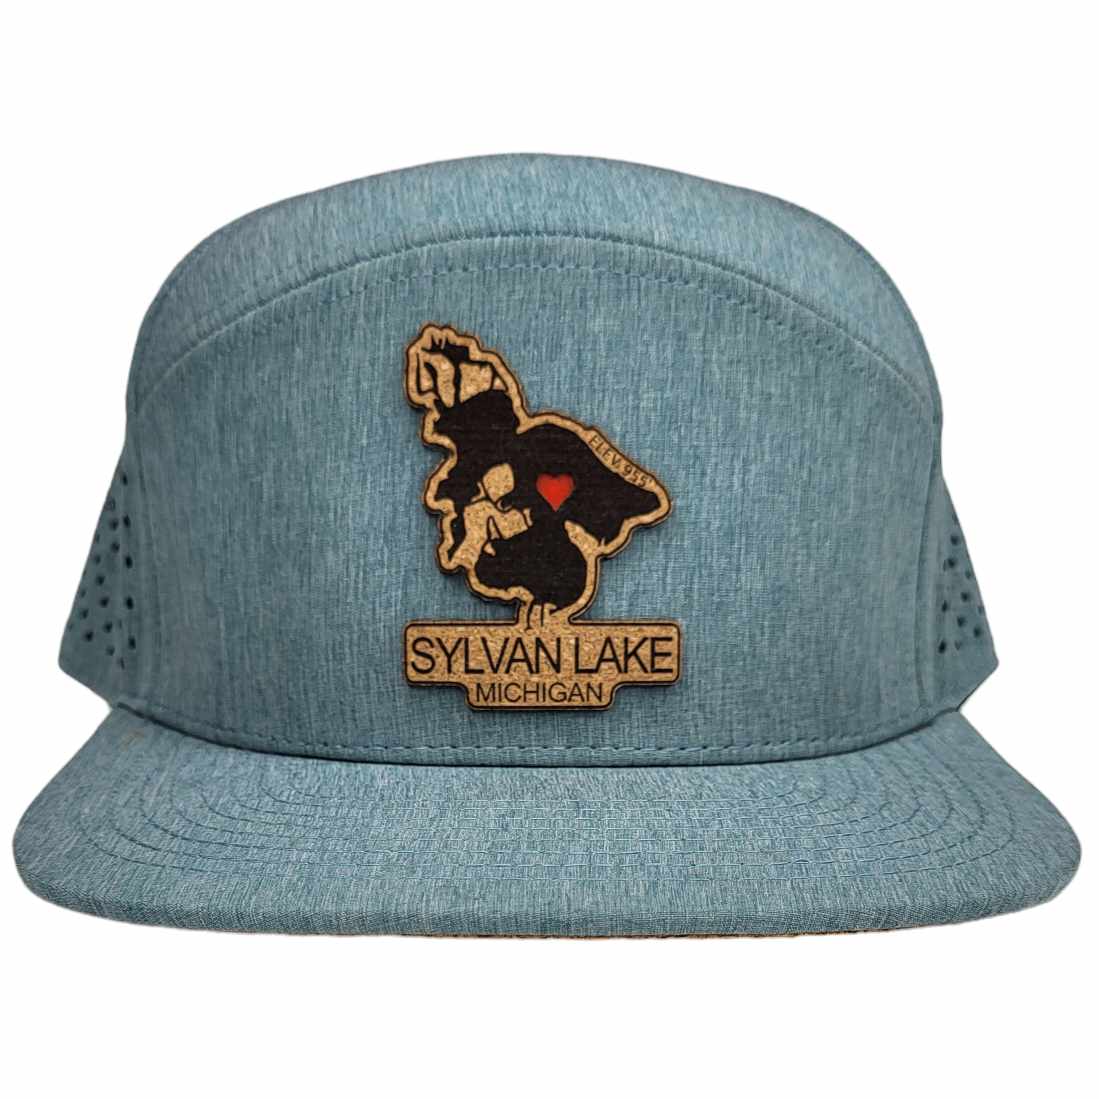 Sylvan Lake Michigan Hat